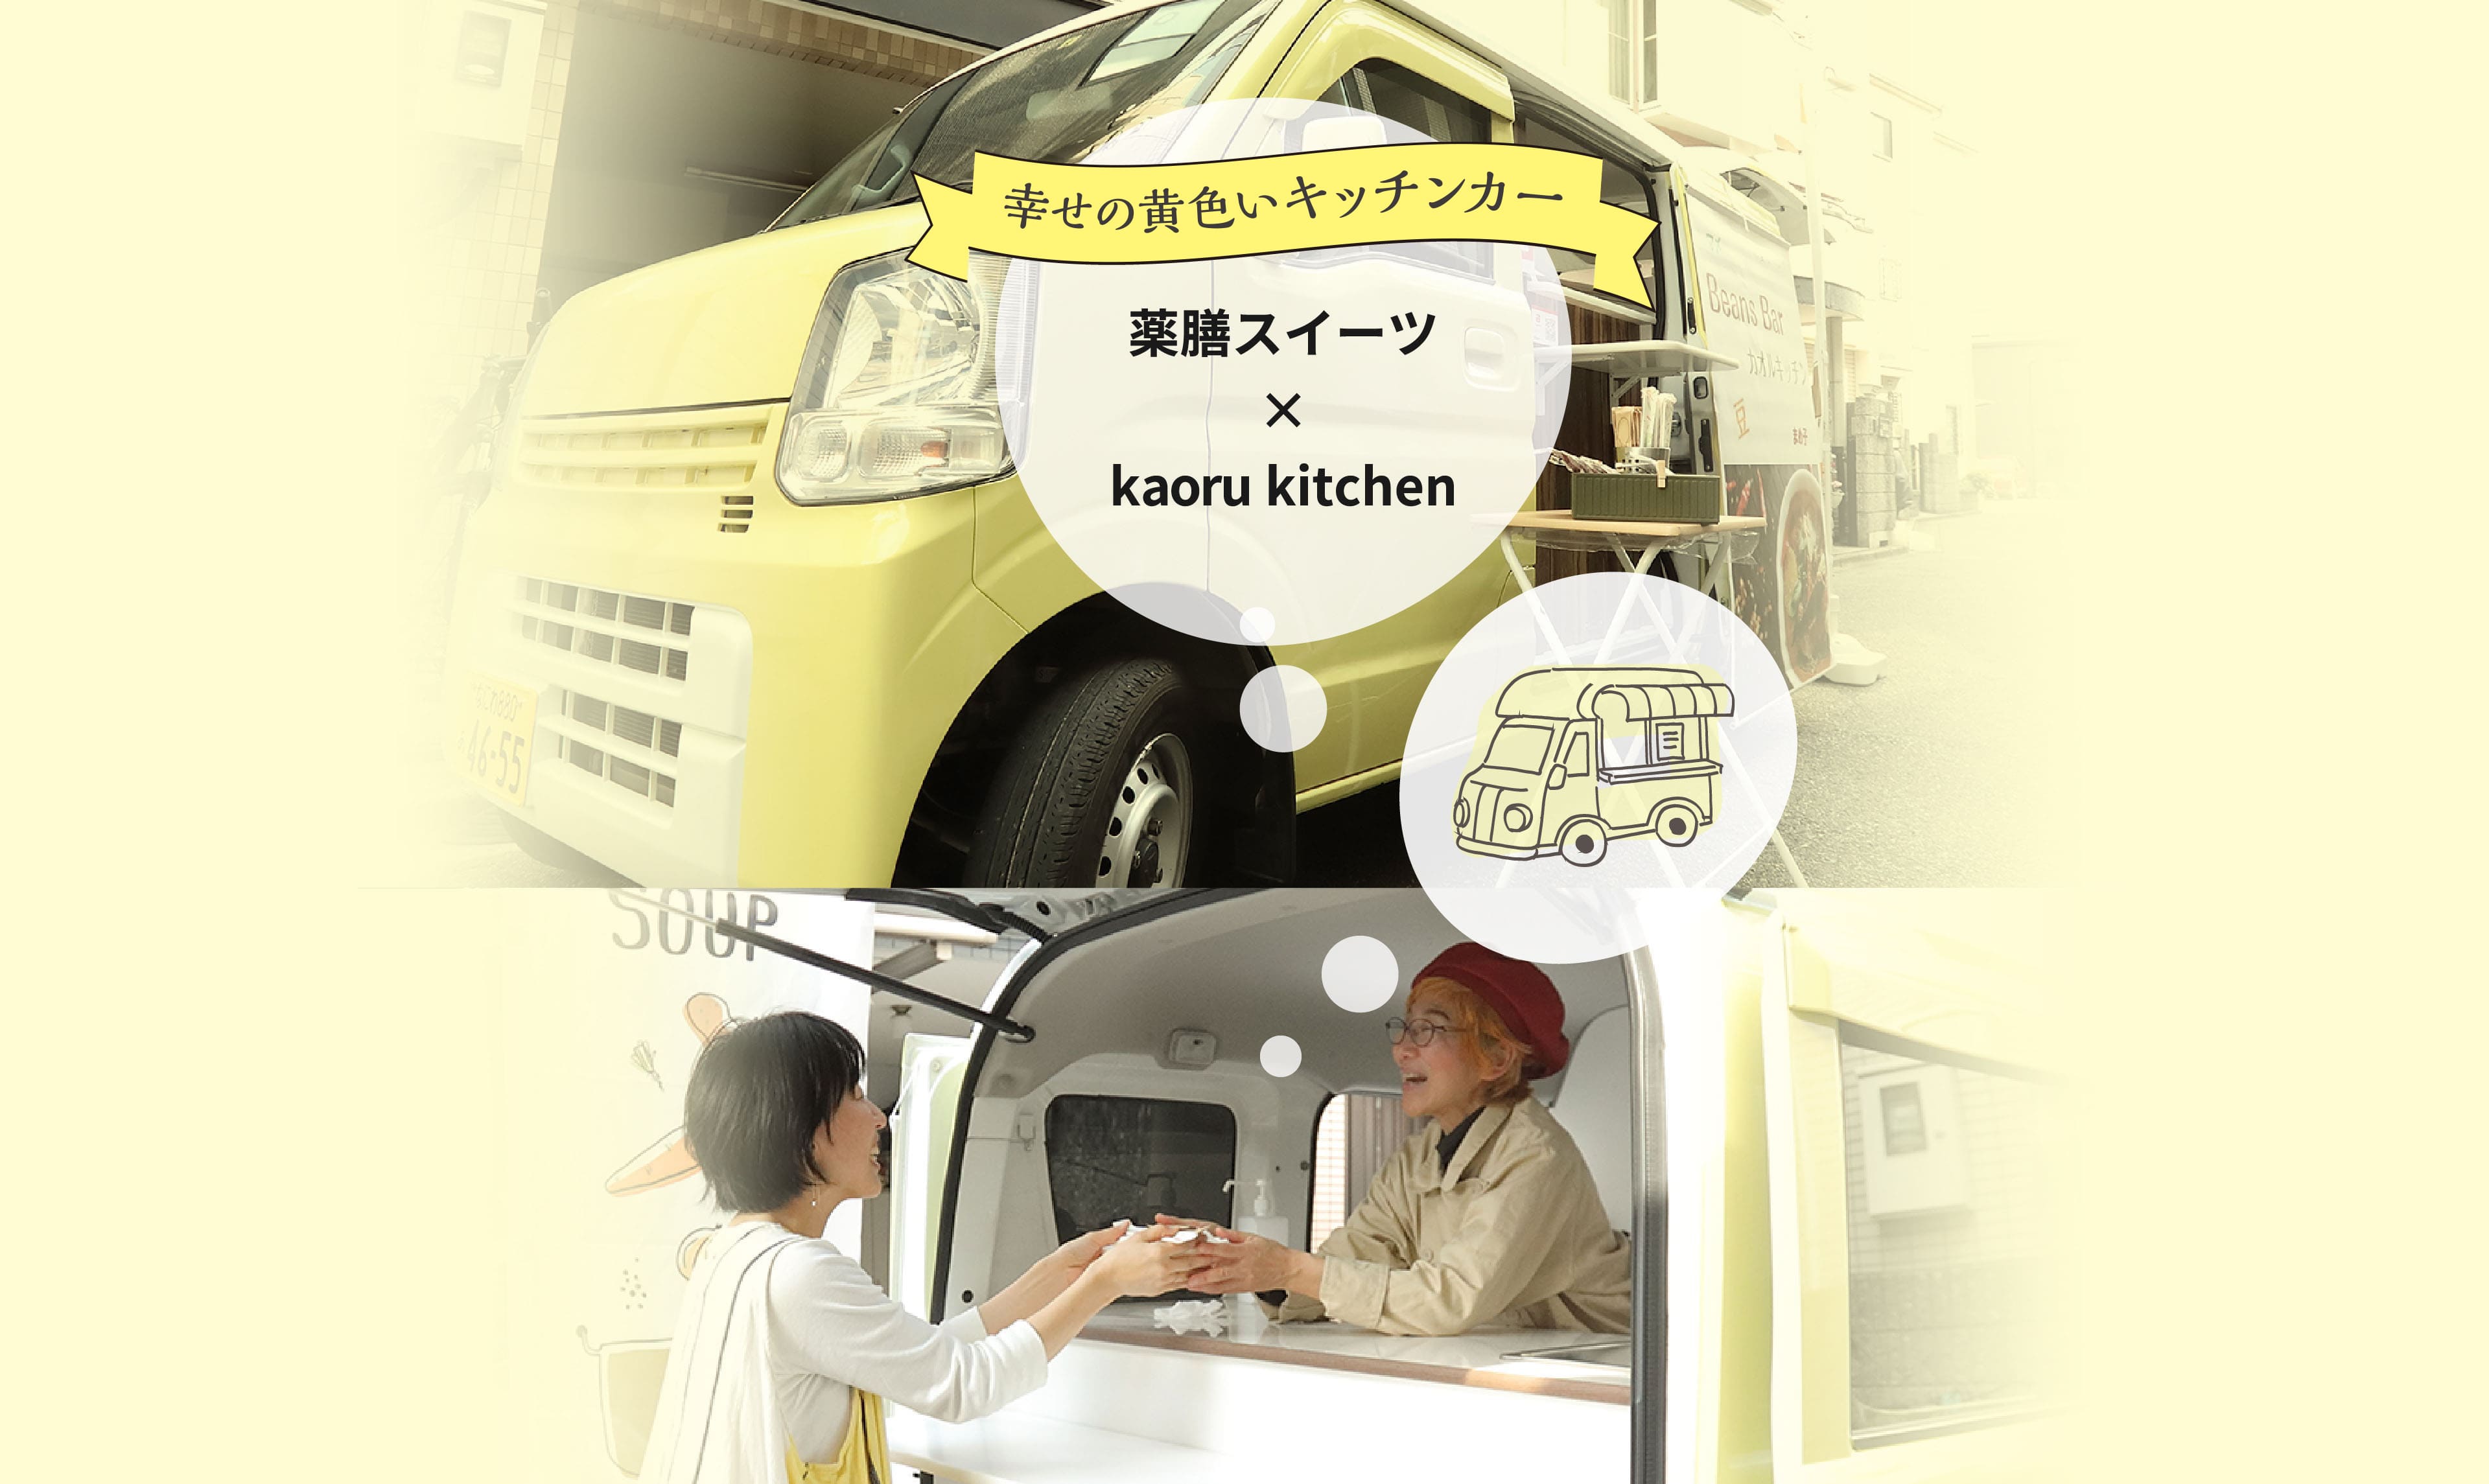 幸せの黄色いキッチンカー 薬膳スイーツ×kaoru kitchen